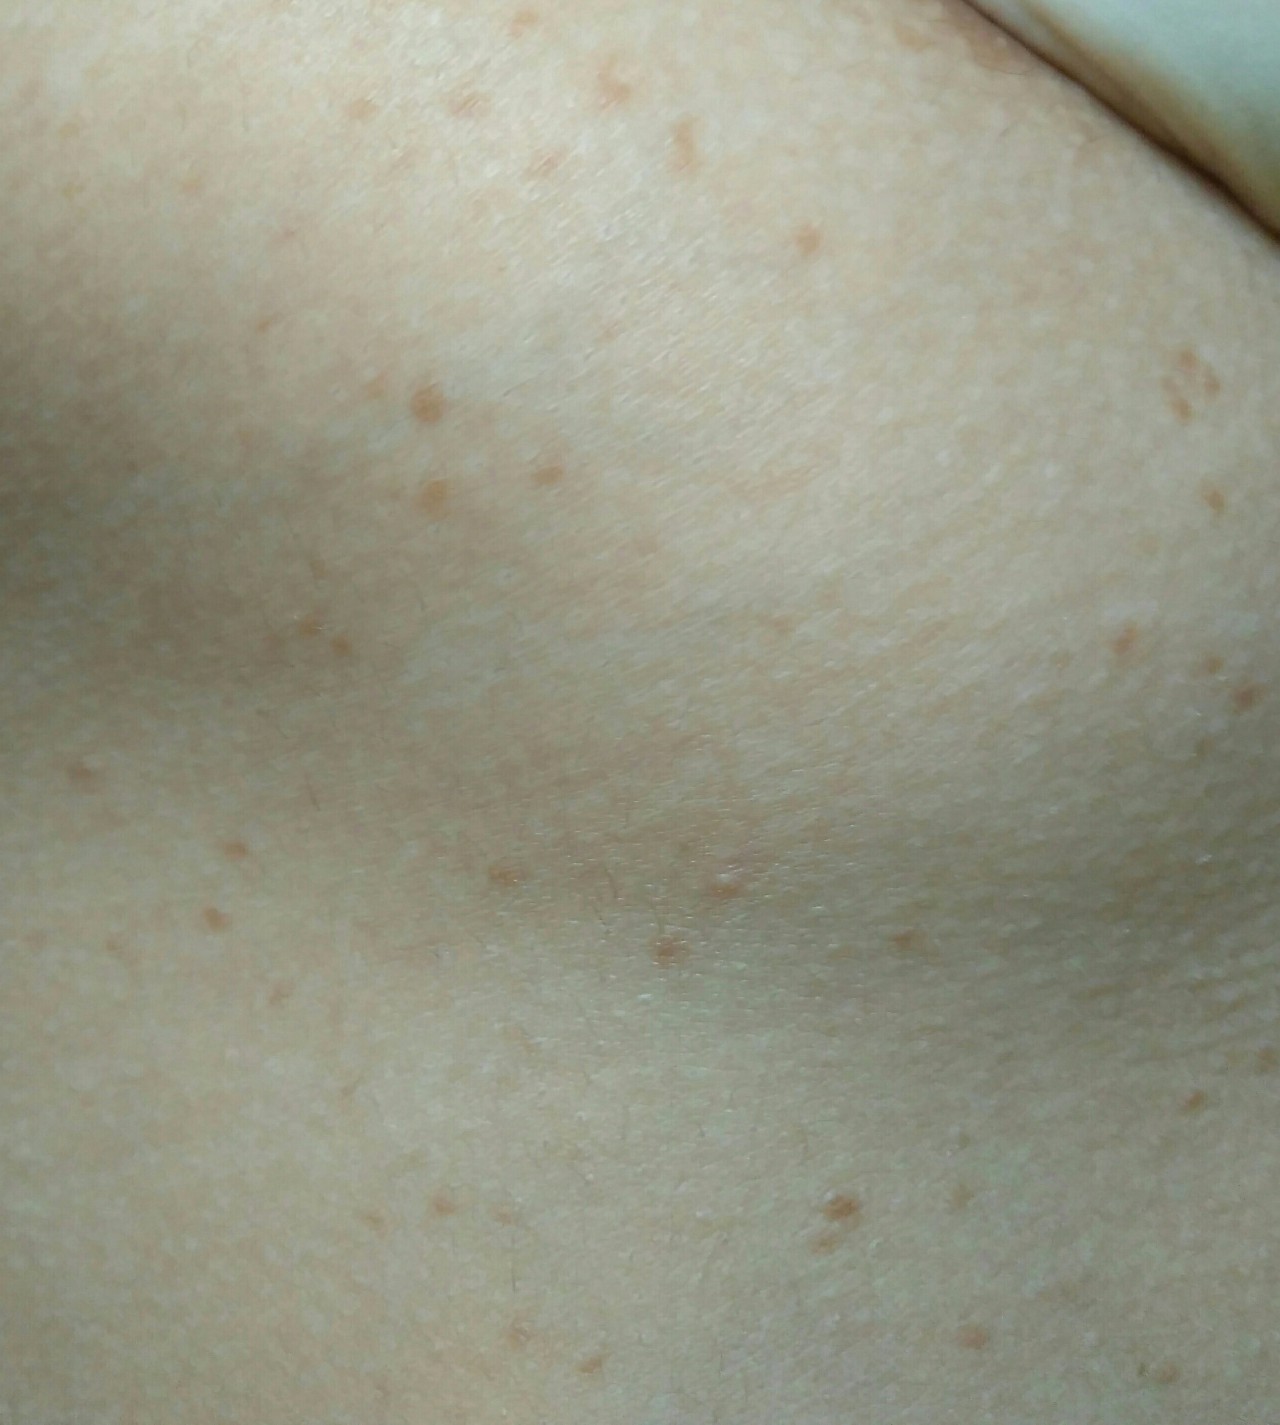 светлые пятна на груди женщин фото 17